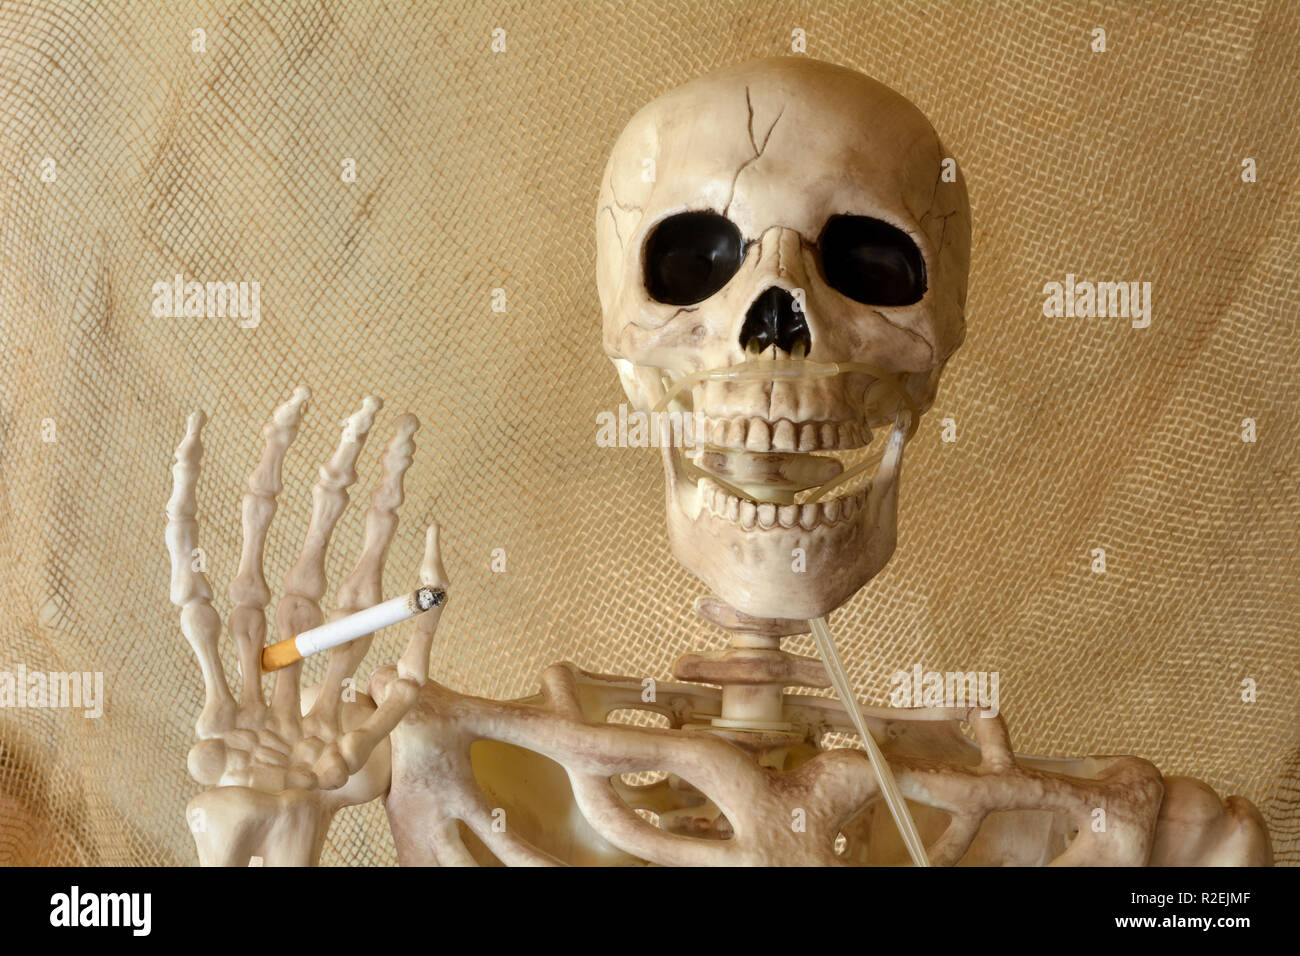 Tenendo lo scheletro di sigaretta accesa con la mano e la cannula per l'ossigeno attaccata alla cavità nasale Foto Stock